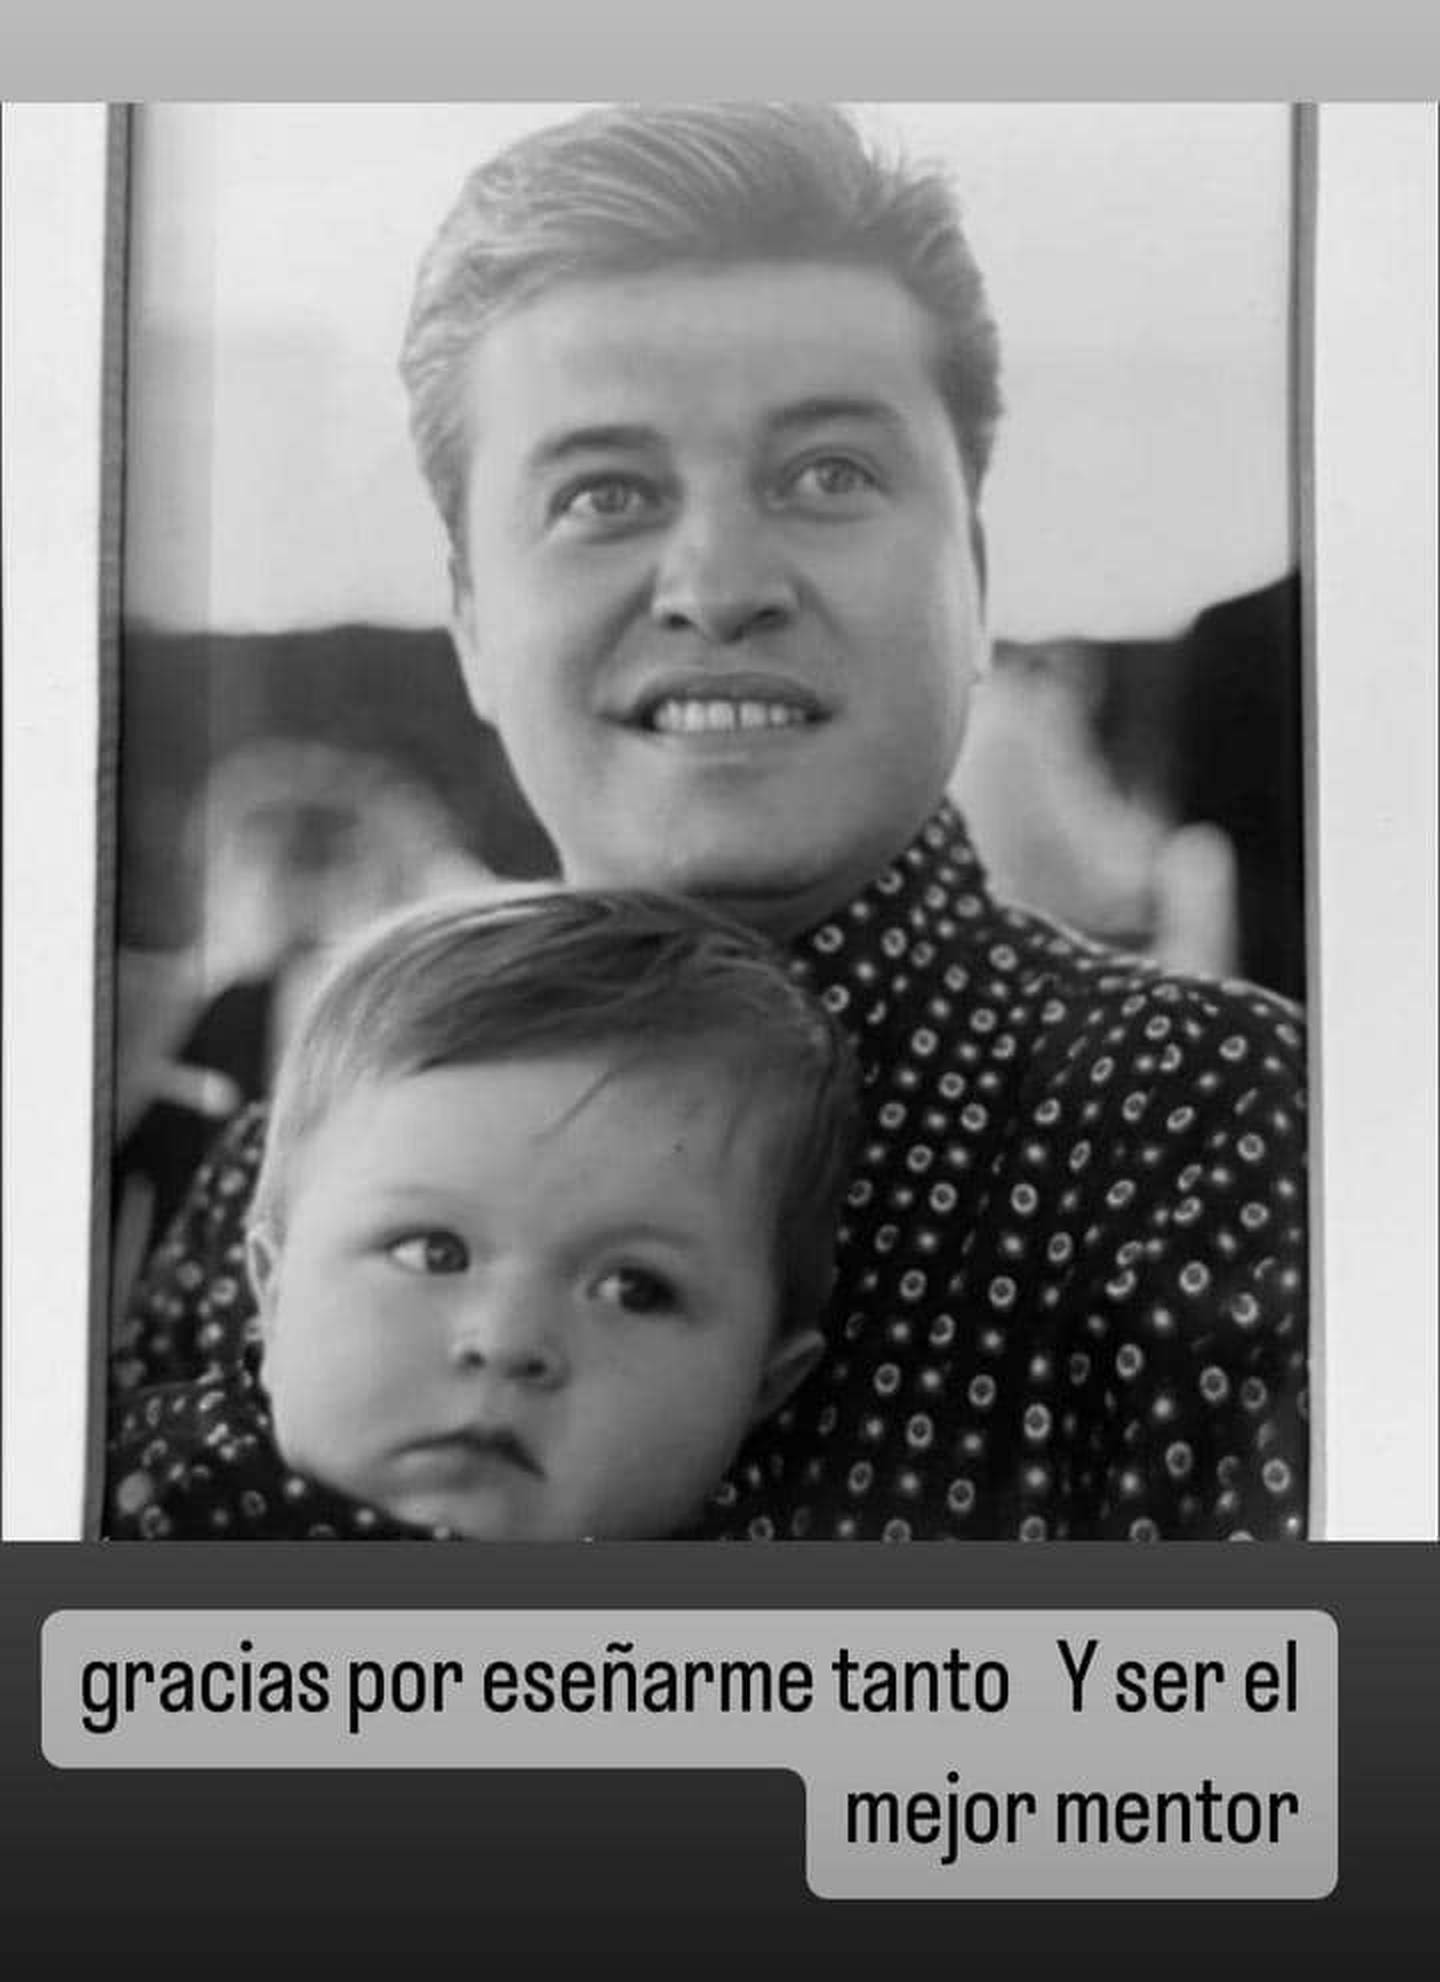 “Se me acabó la etapa se niño millonario”: Fofo Márquez publica por primera vez fotos de su padre tras su muerte